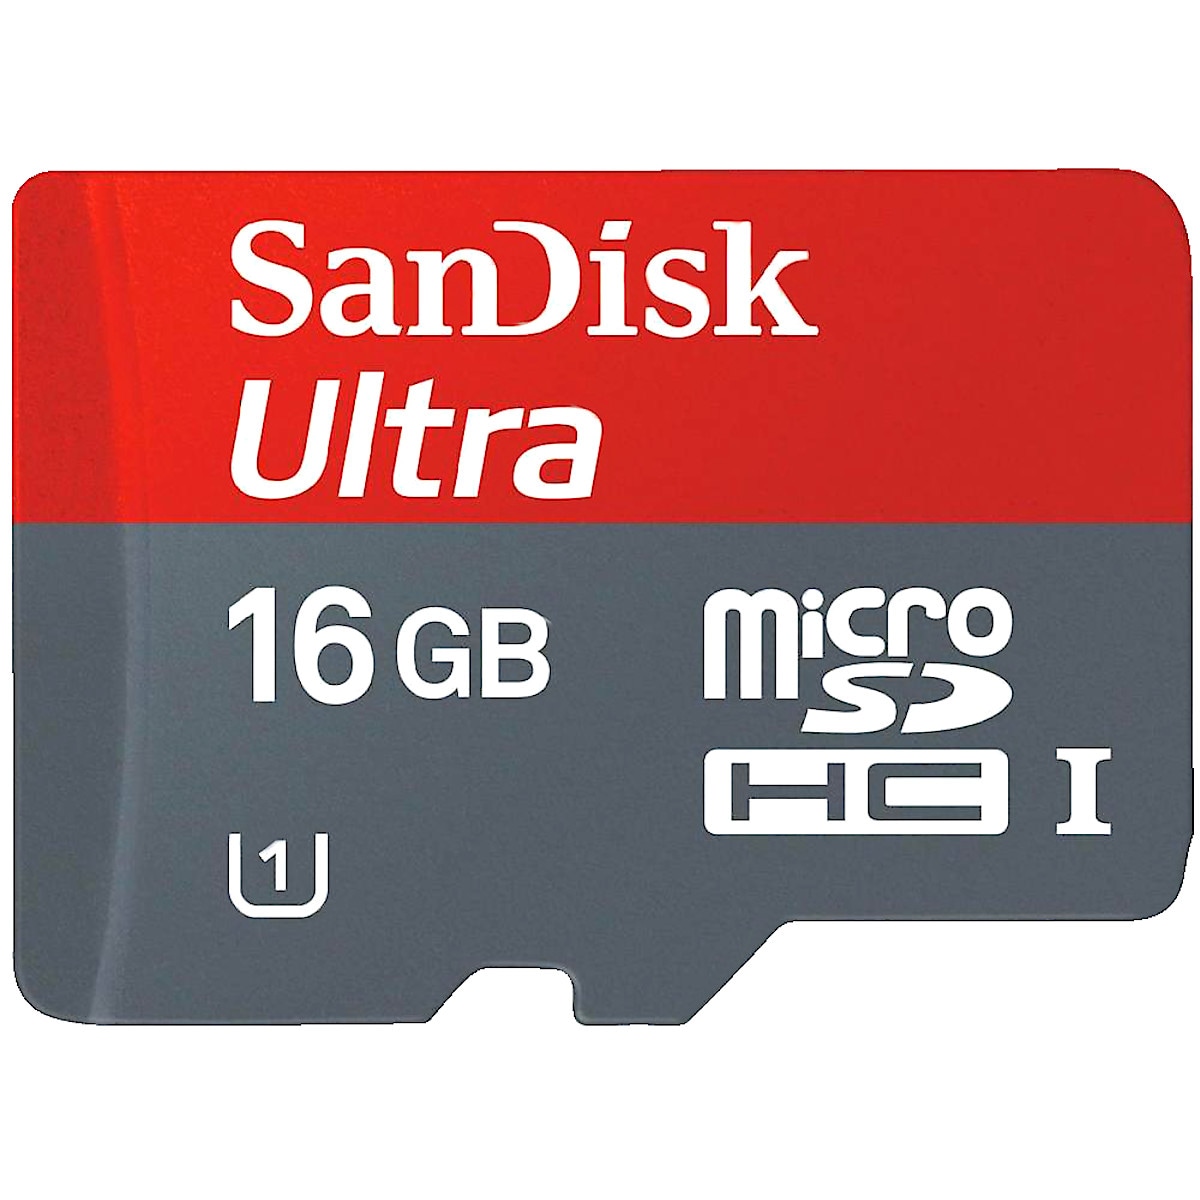 SanDisk MicroSDHC UHS 1 minnekort 